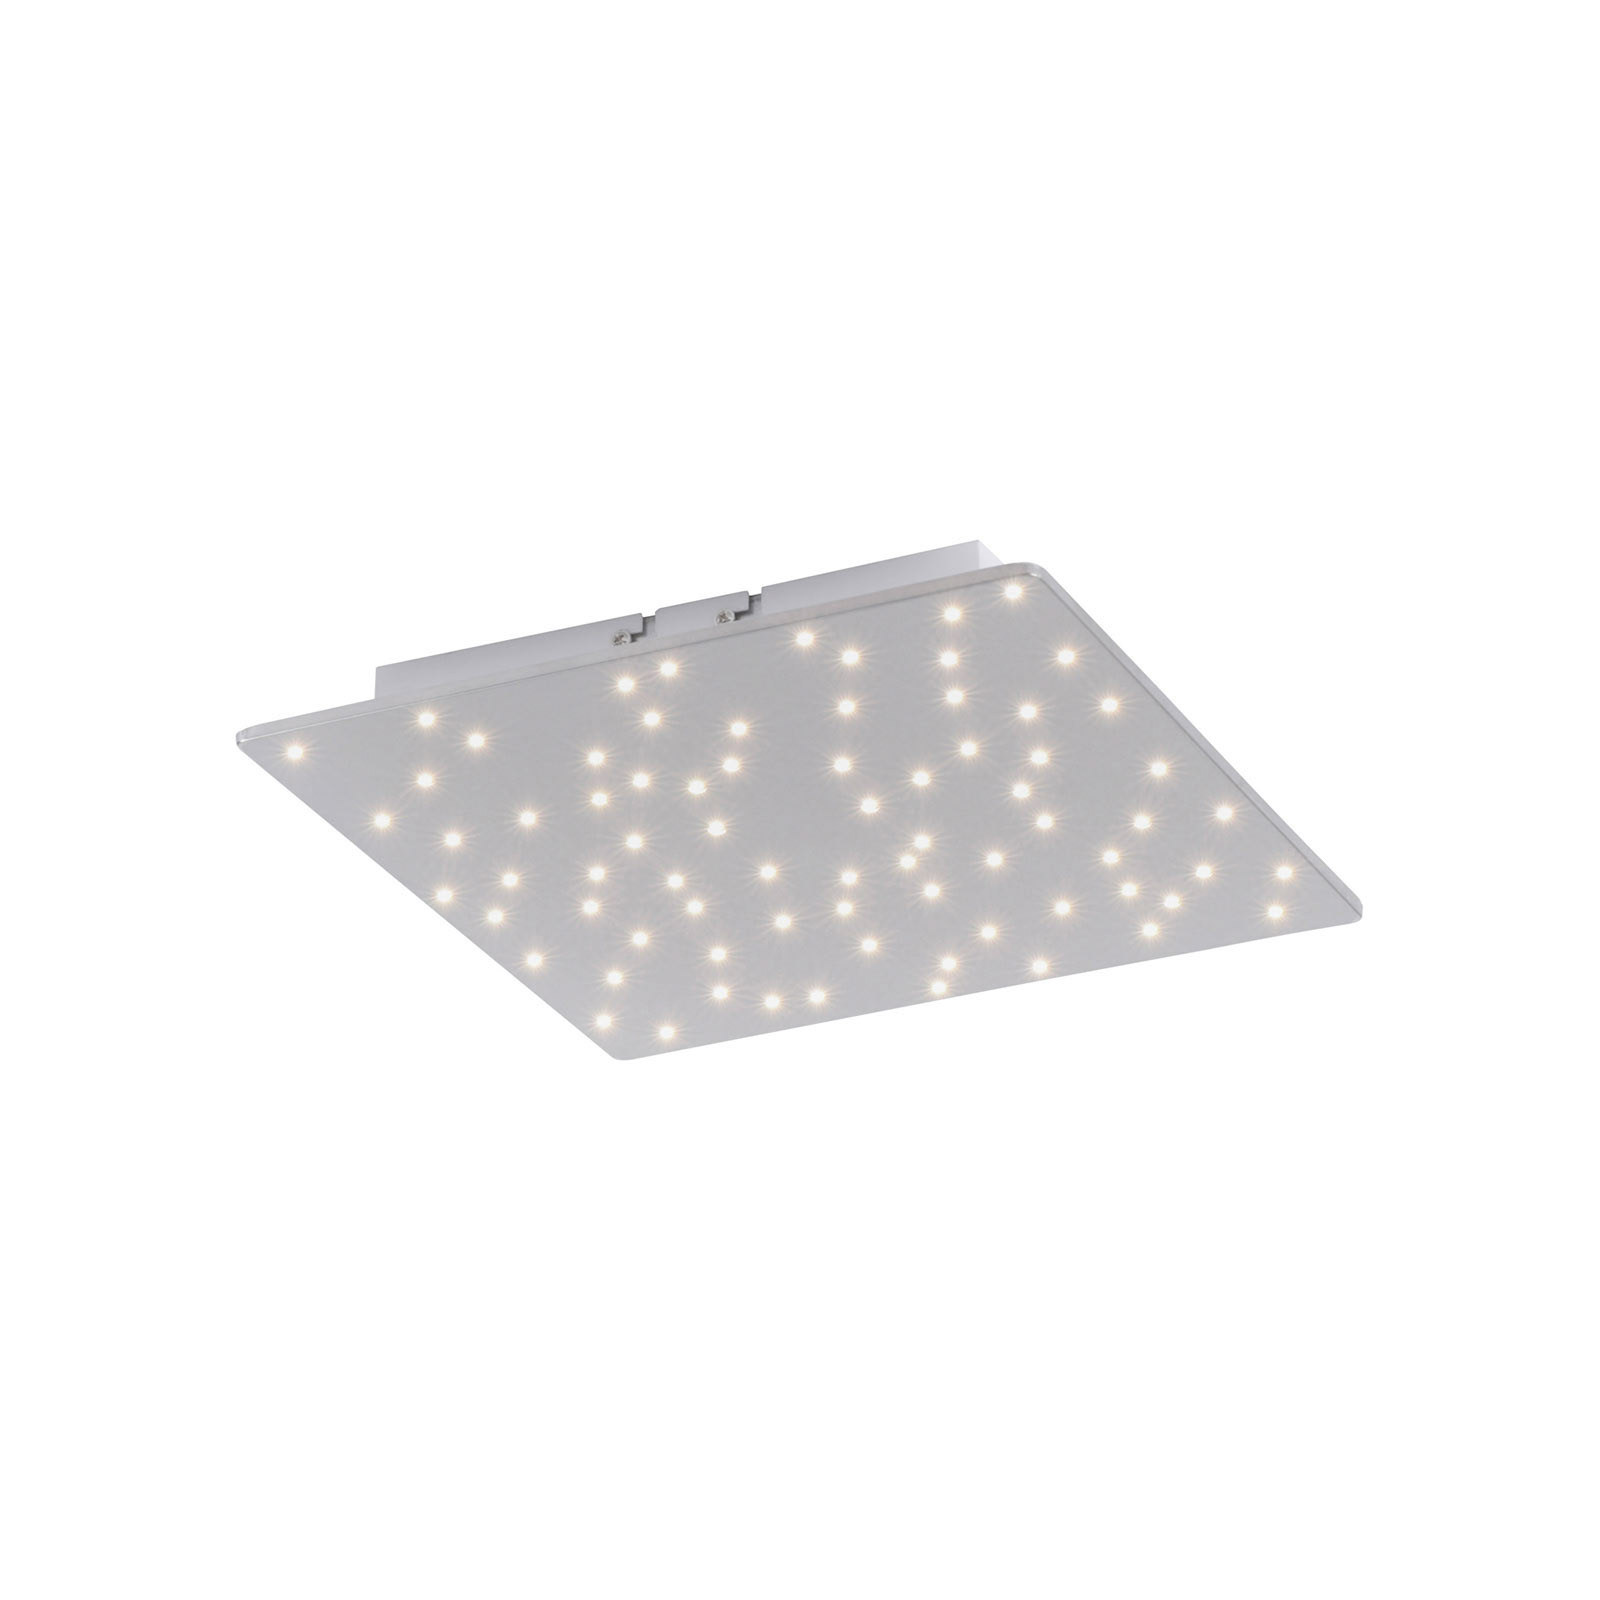 Plafonnier LED Sparkle, tunable white, 30 x 30 cm